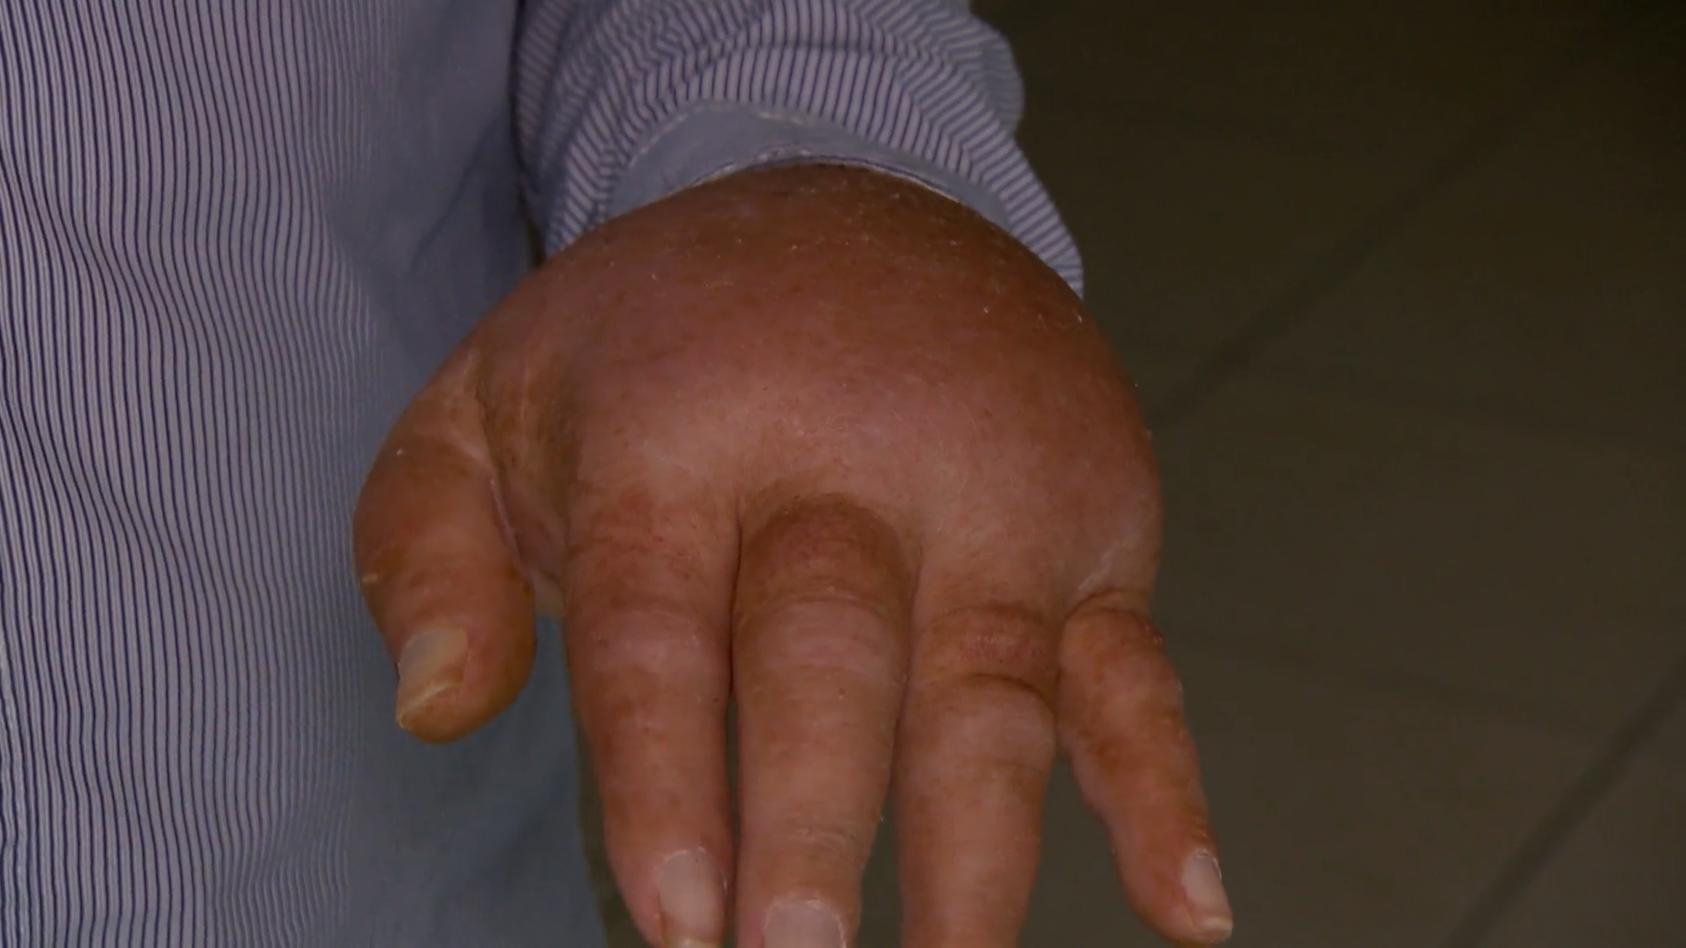 Mann (60) kriegt Nägel nur unter Vollnarkose geschnitten Seit einem Unfall hat Dieter K. grausame Schmerzen